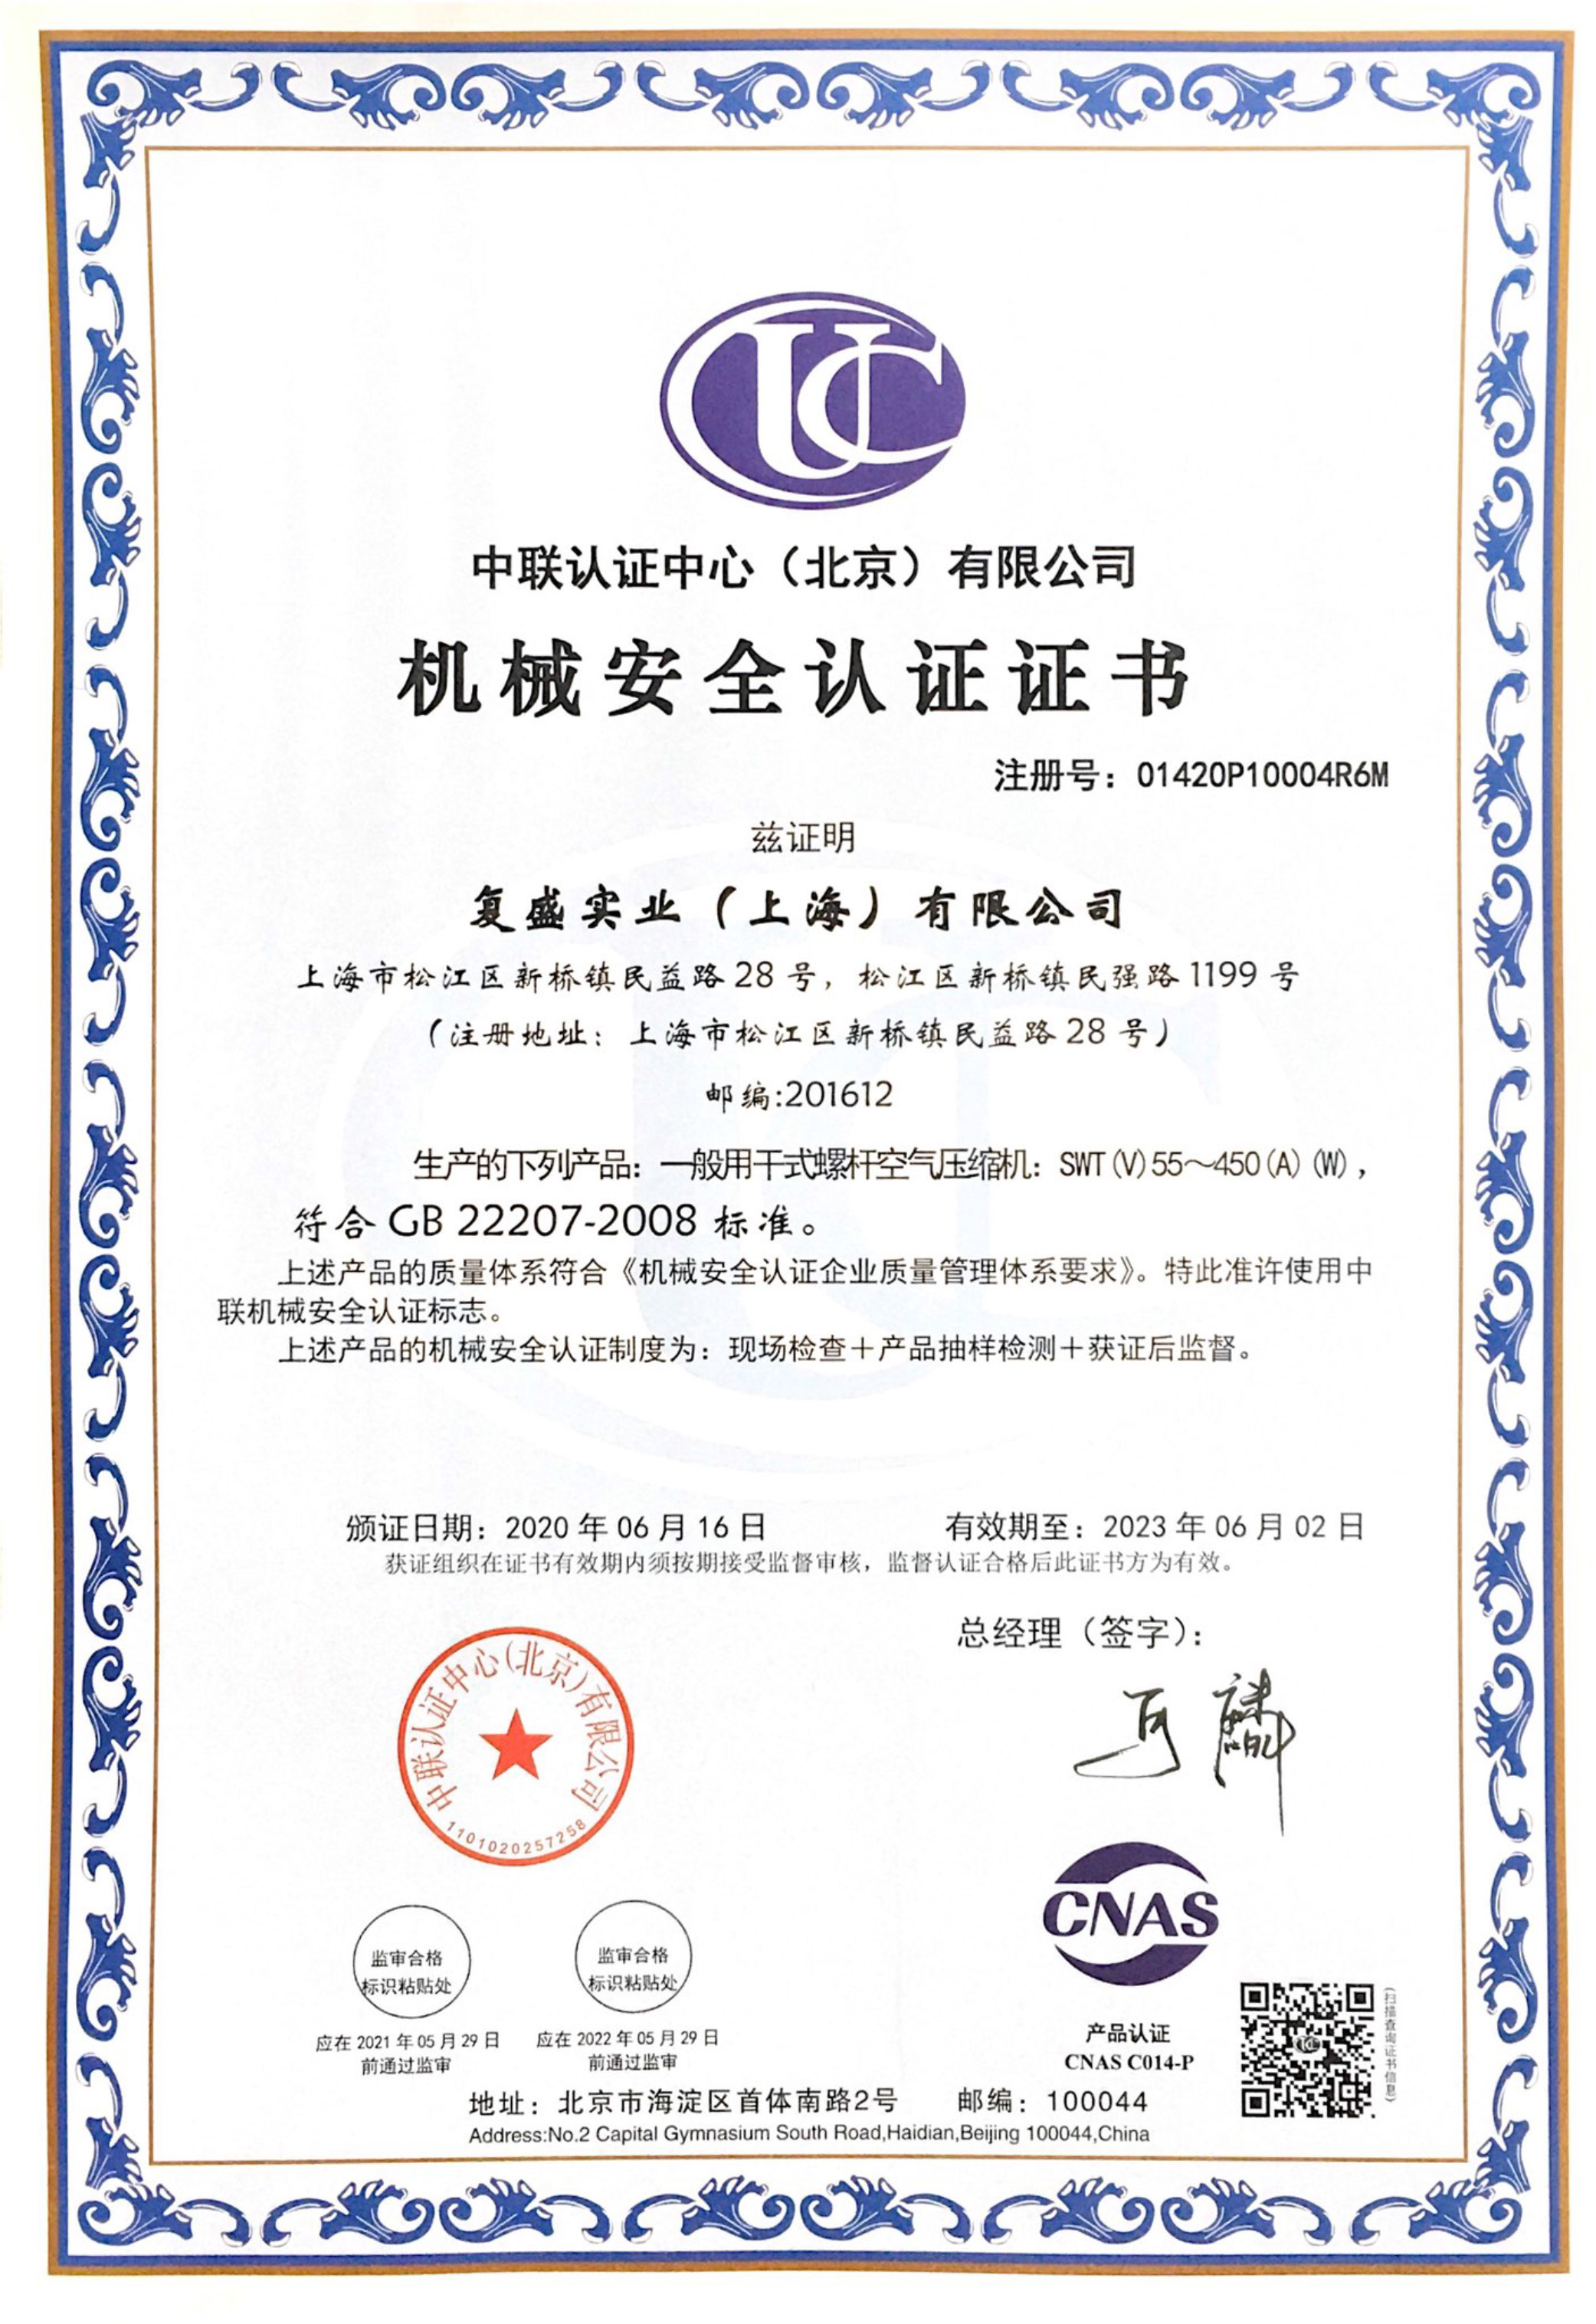 机械安全认证证书-一般用干式螺杆空气压缩机_中文_202306.jpg